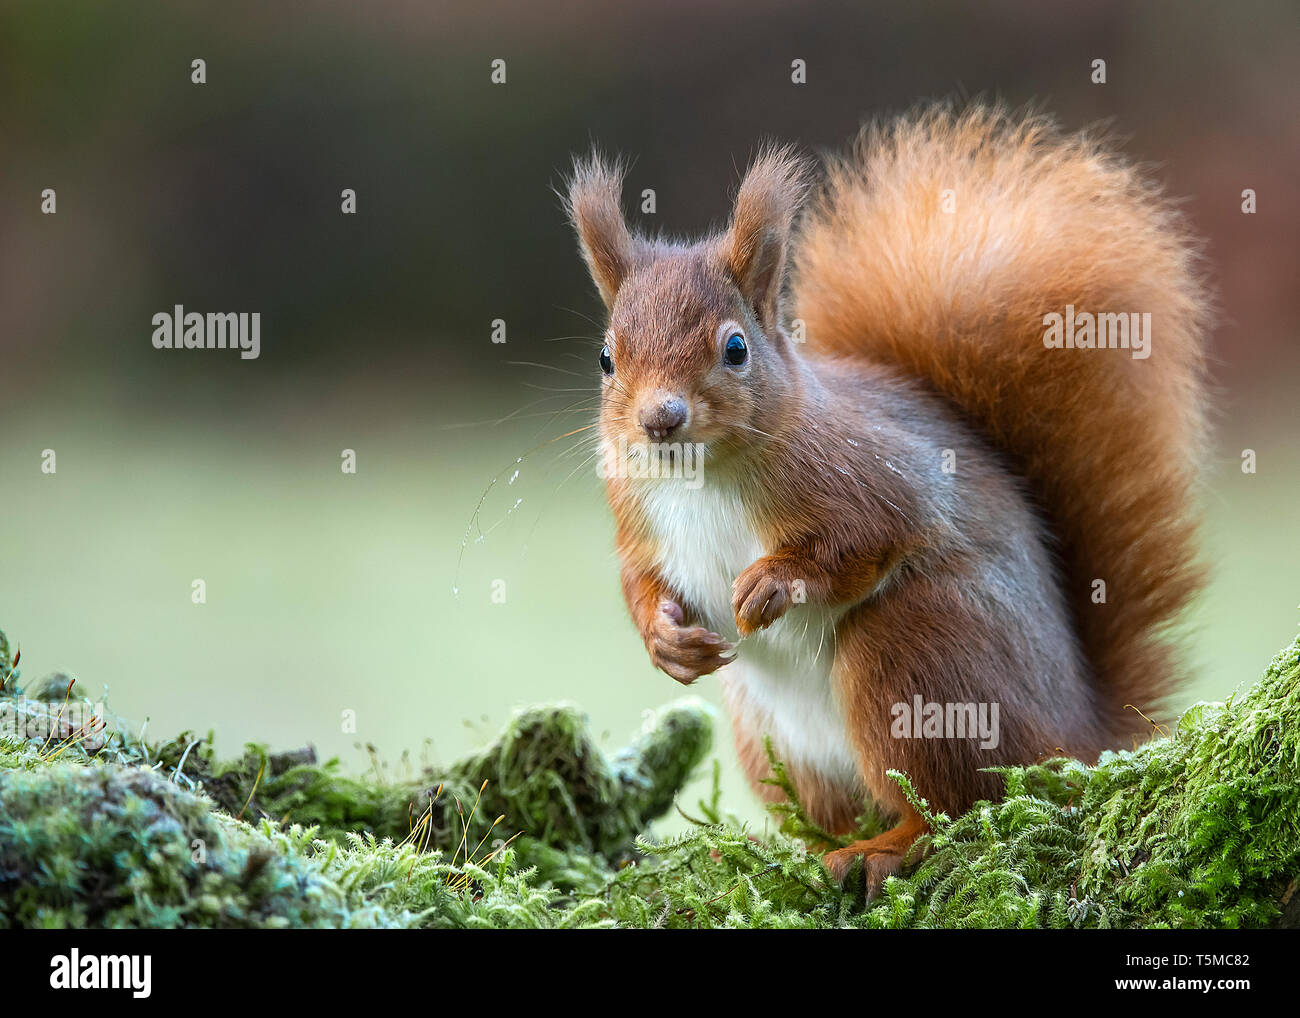 Scottish Red squirrel in winter - portrait, Dumfries Scotland Stock Photo